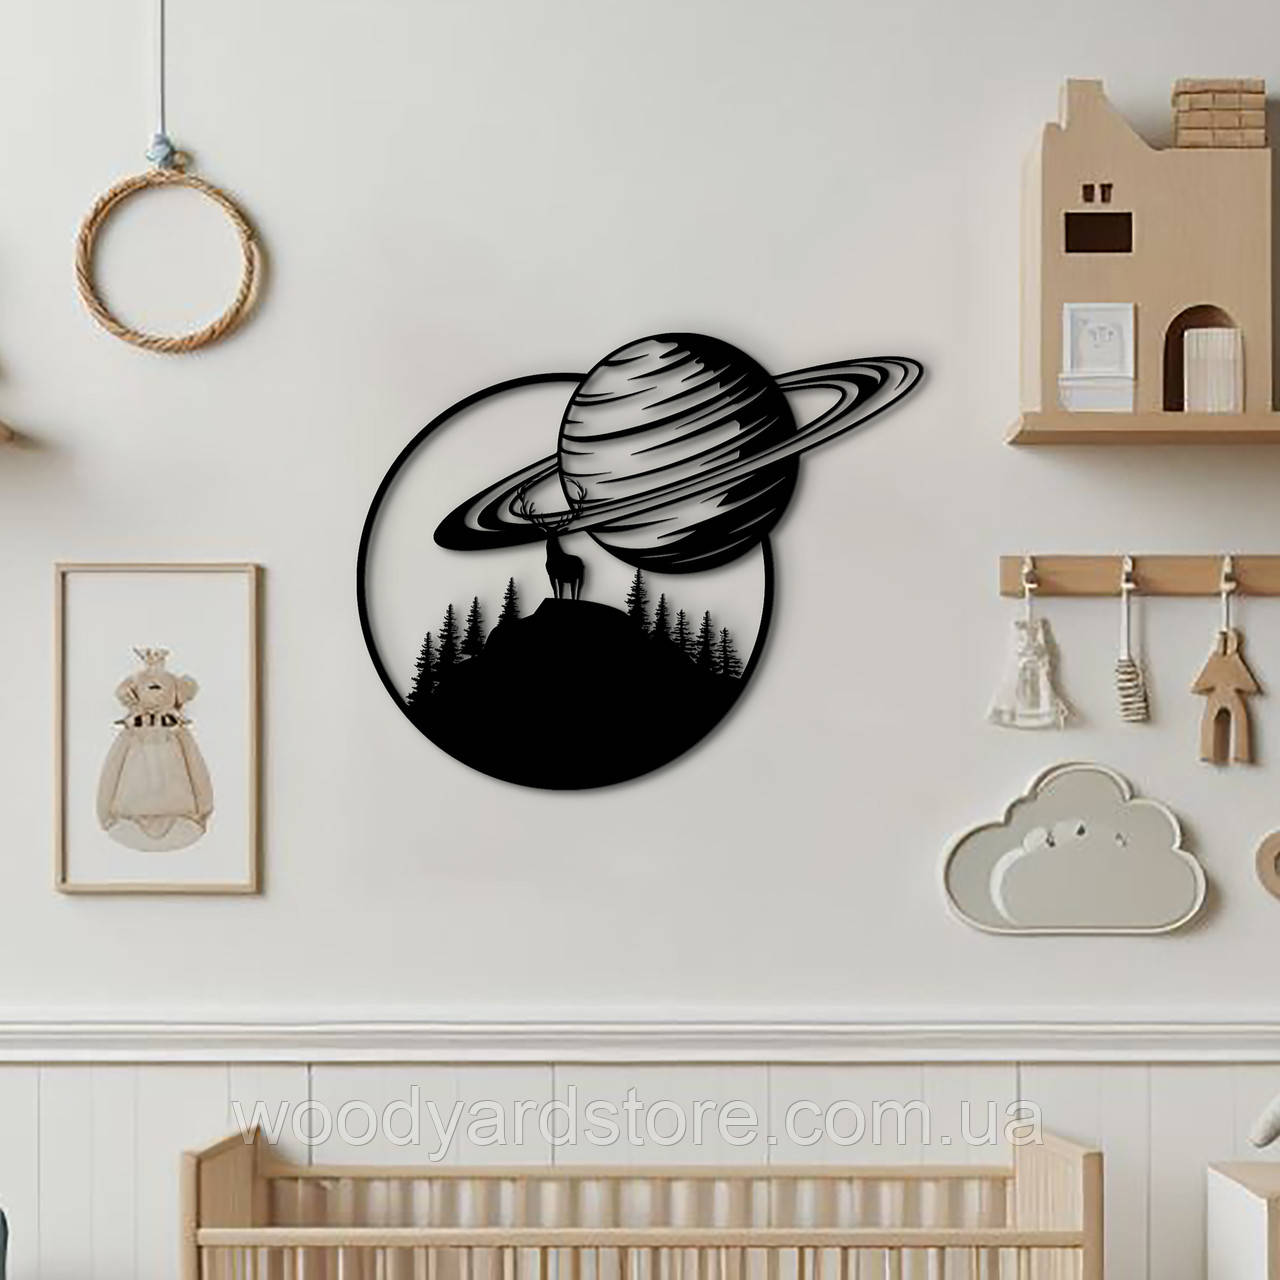 Дерев'яний декор для дому, декоративне панно на стіну "Планета Сатурн в день", стиль лофт 20x25 см